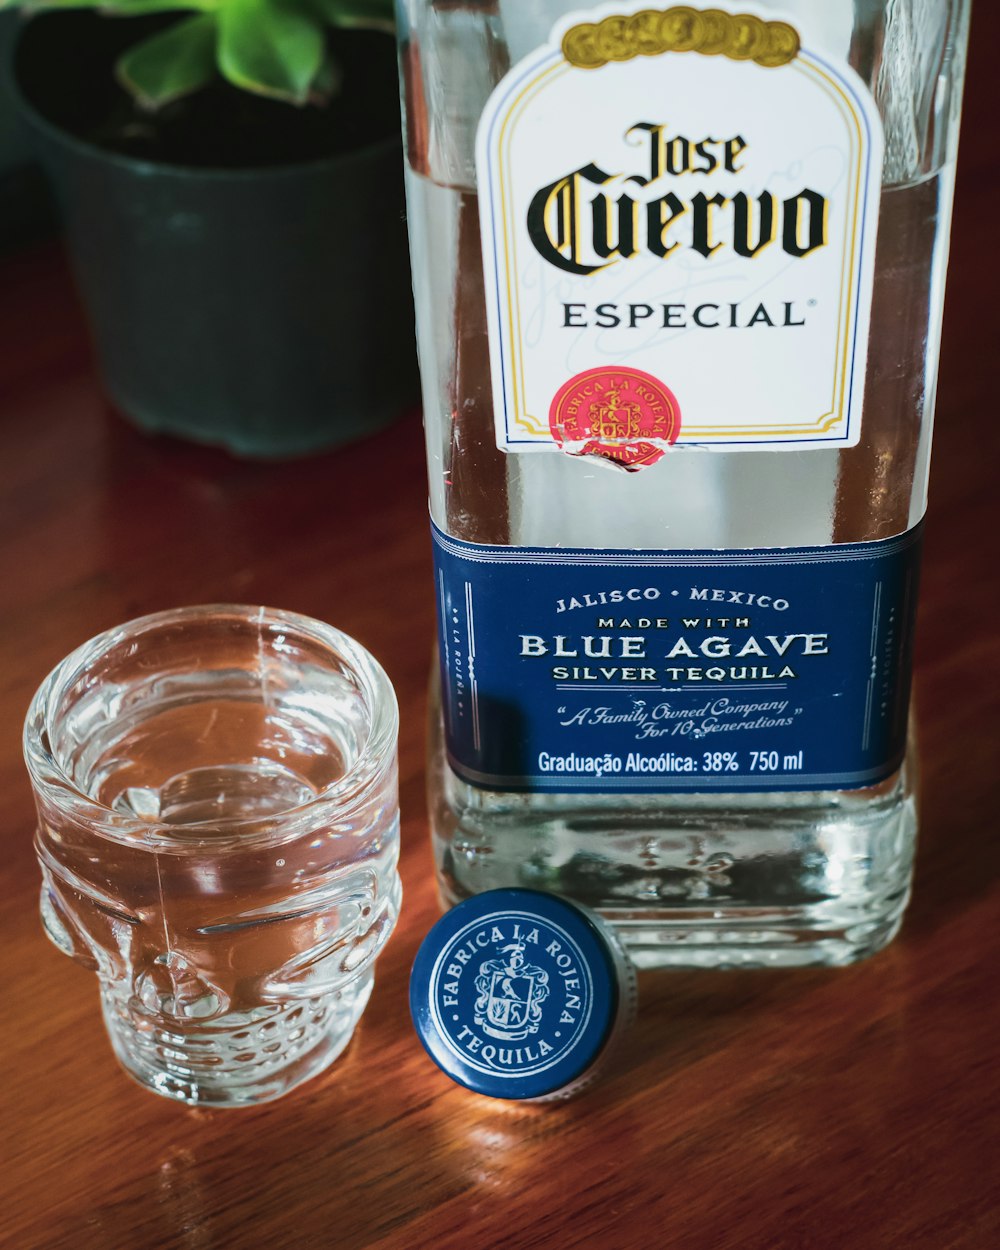 Jose Cuervo Especial Blue Agave bottle